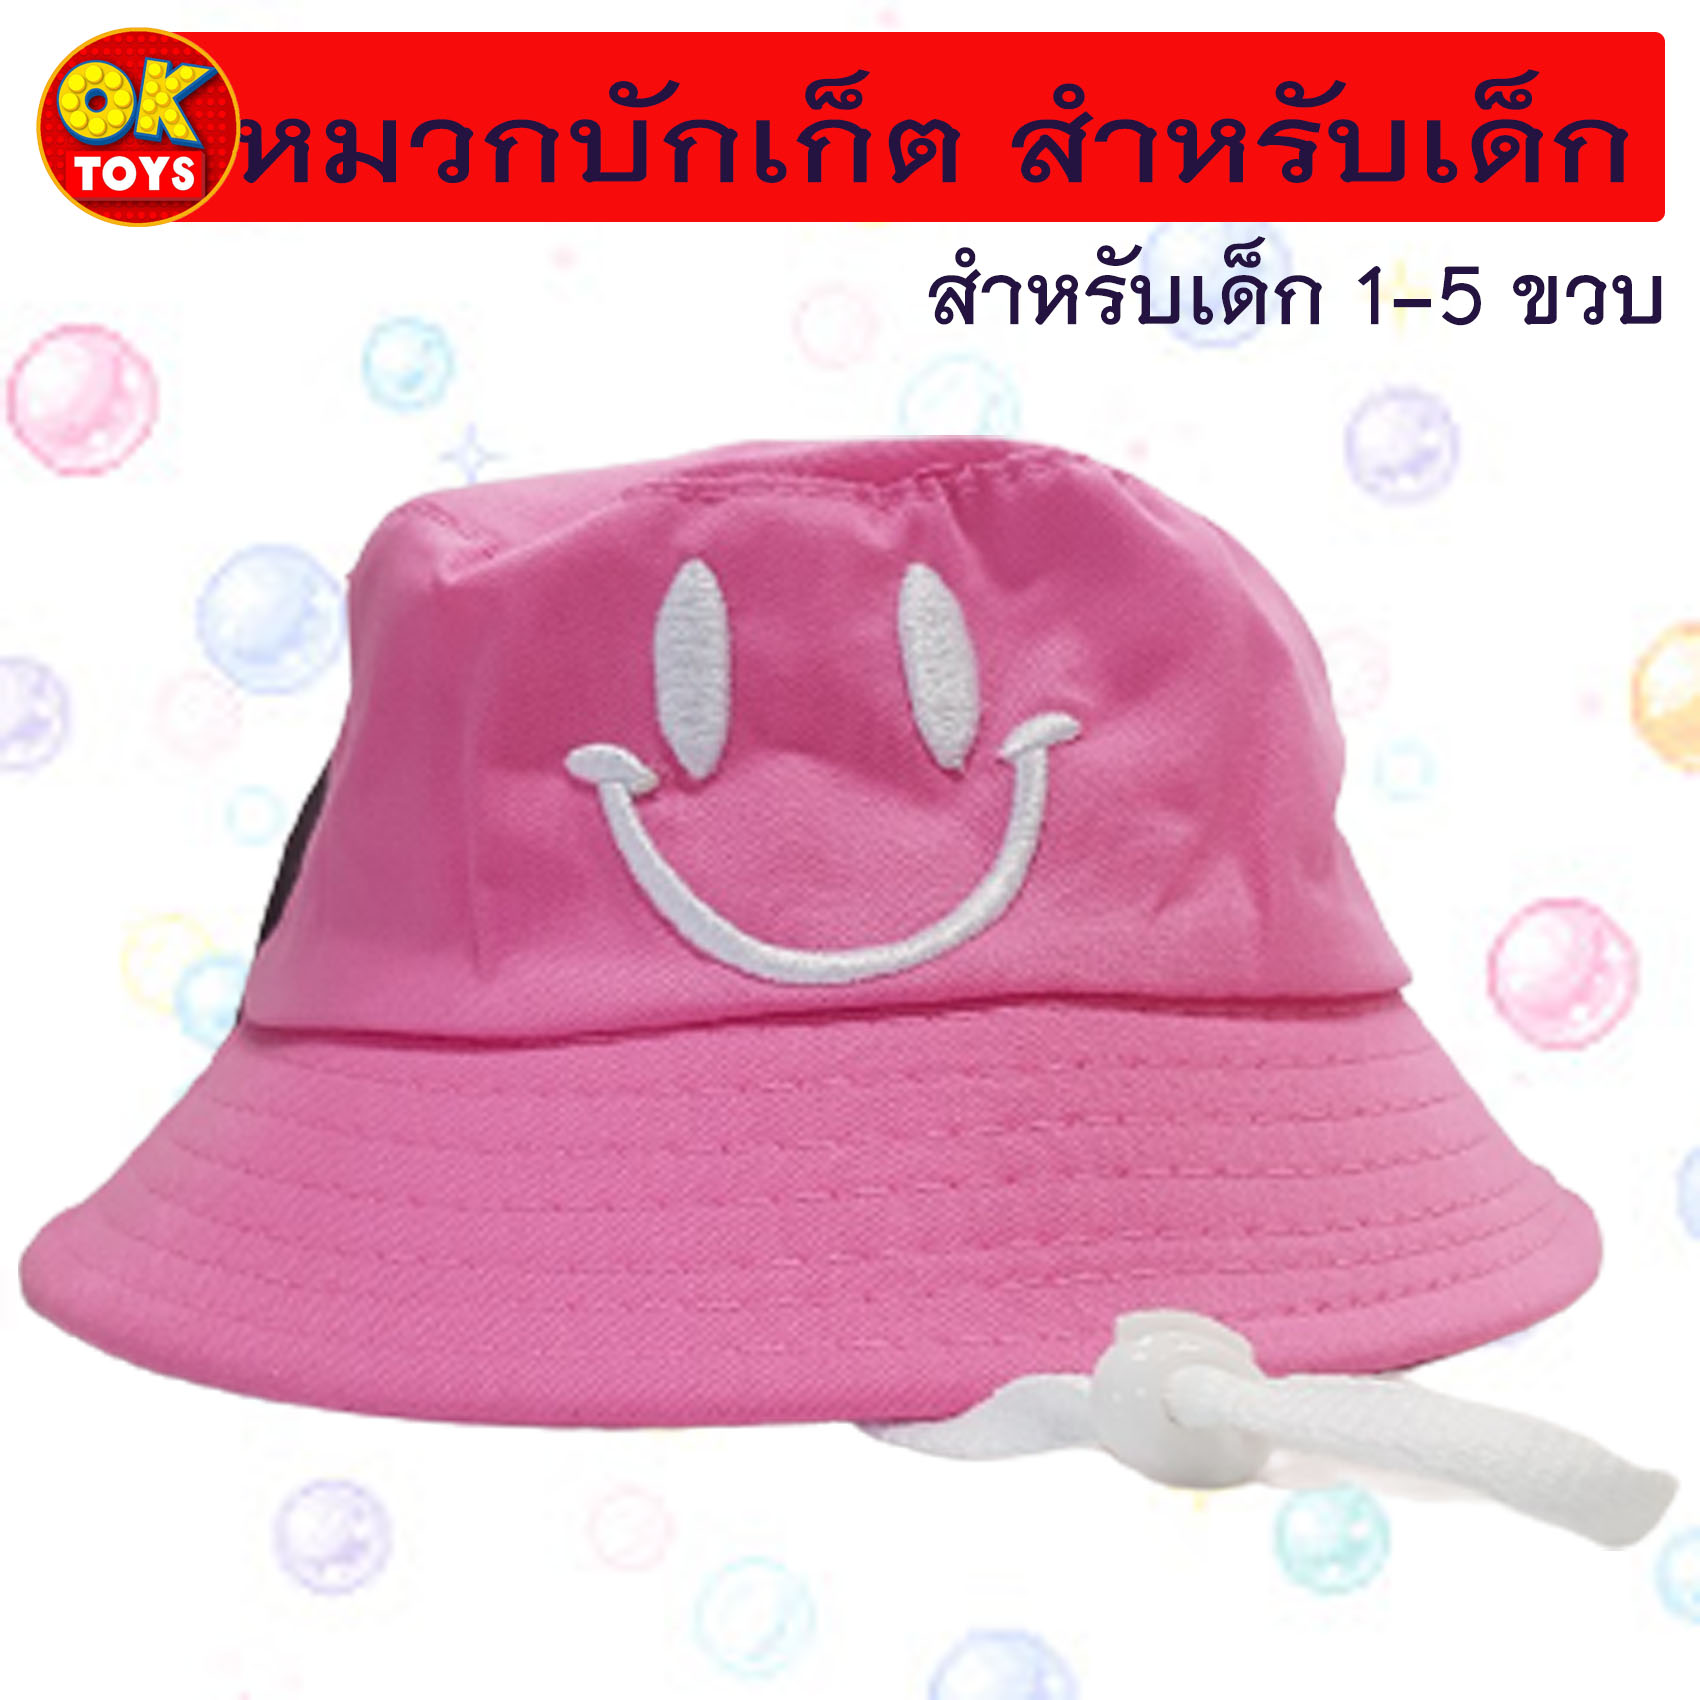 AM0035 หมวกบักเก็ตสำหรับเด็ก ลายปัก "หน้ายิ้ม" พร้อมสายรัดคาง หมวกเด็กลายปักน่ารักๆ